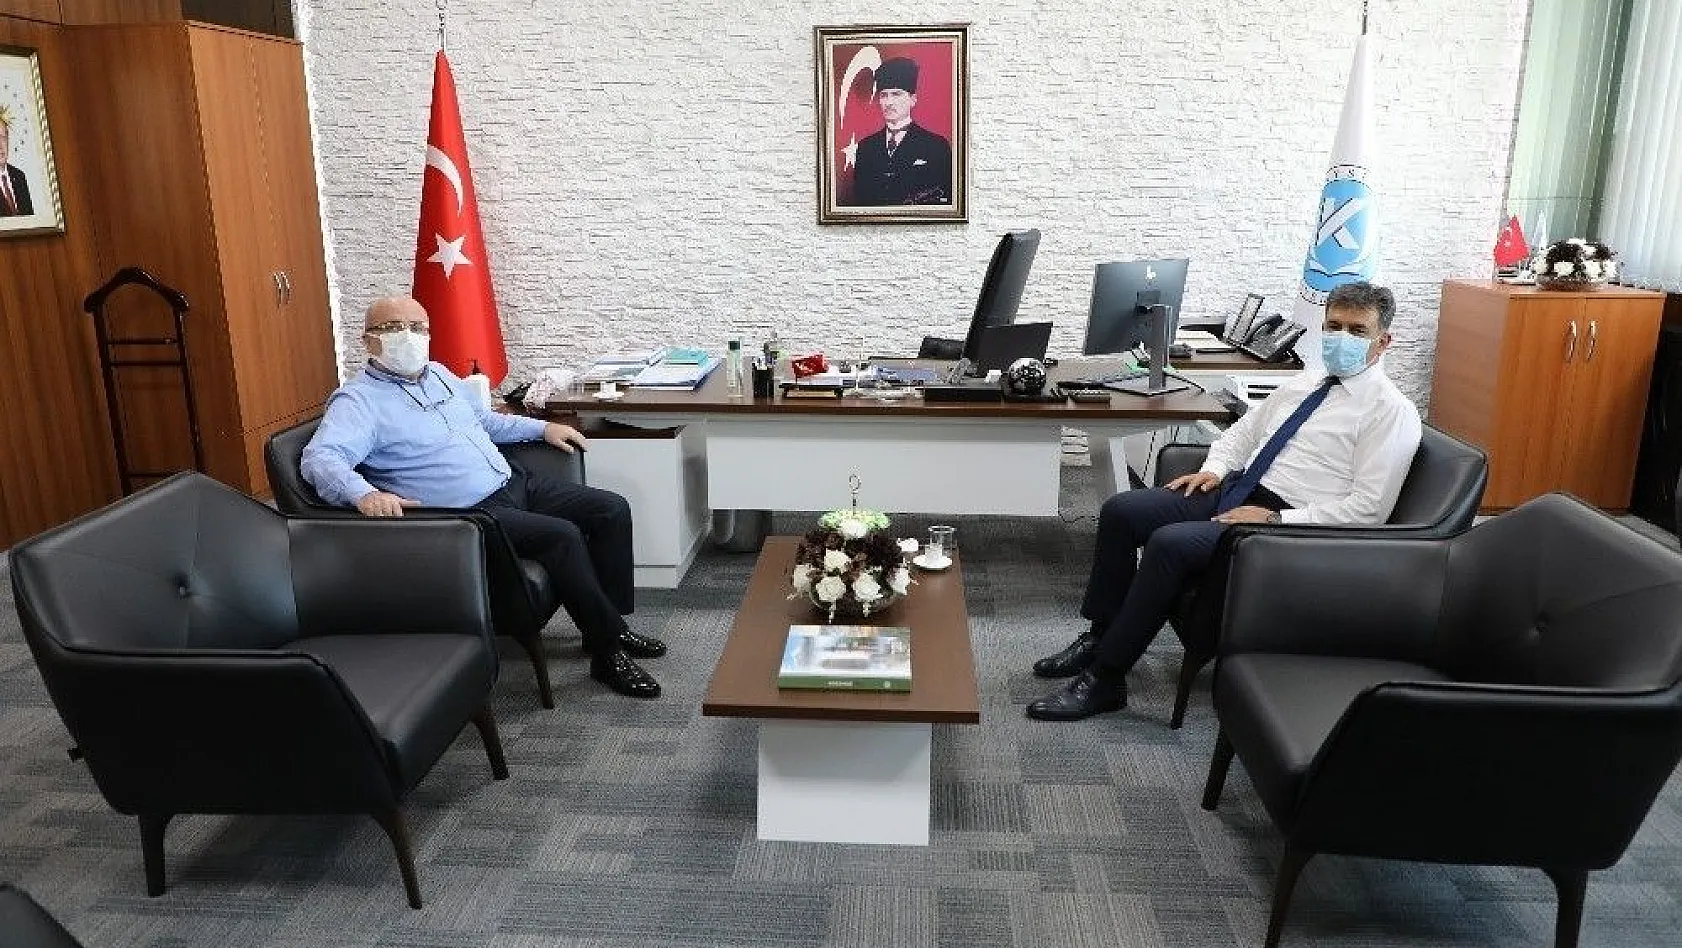 Kayseri Üniversitesi ile Gençlik ve Spor İl Müdürlüğü, Gençlik Faaliyetlerine Yönelik İşbirliğine Gidiyor